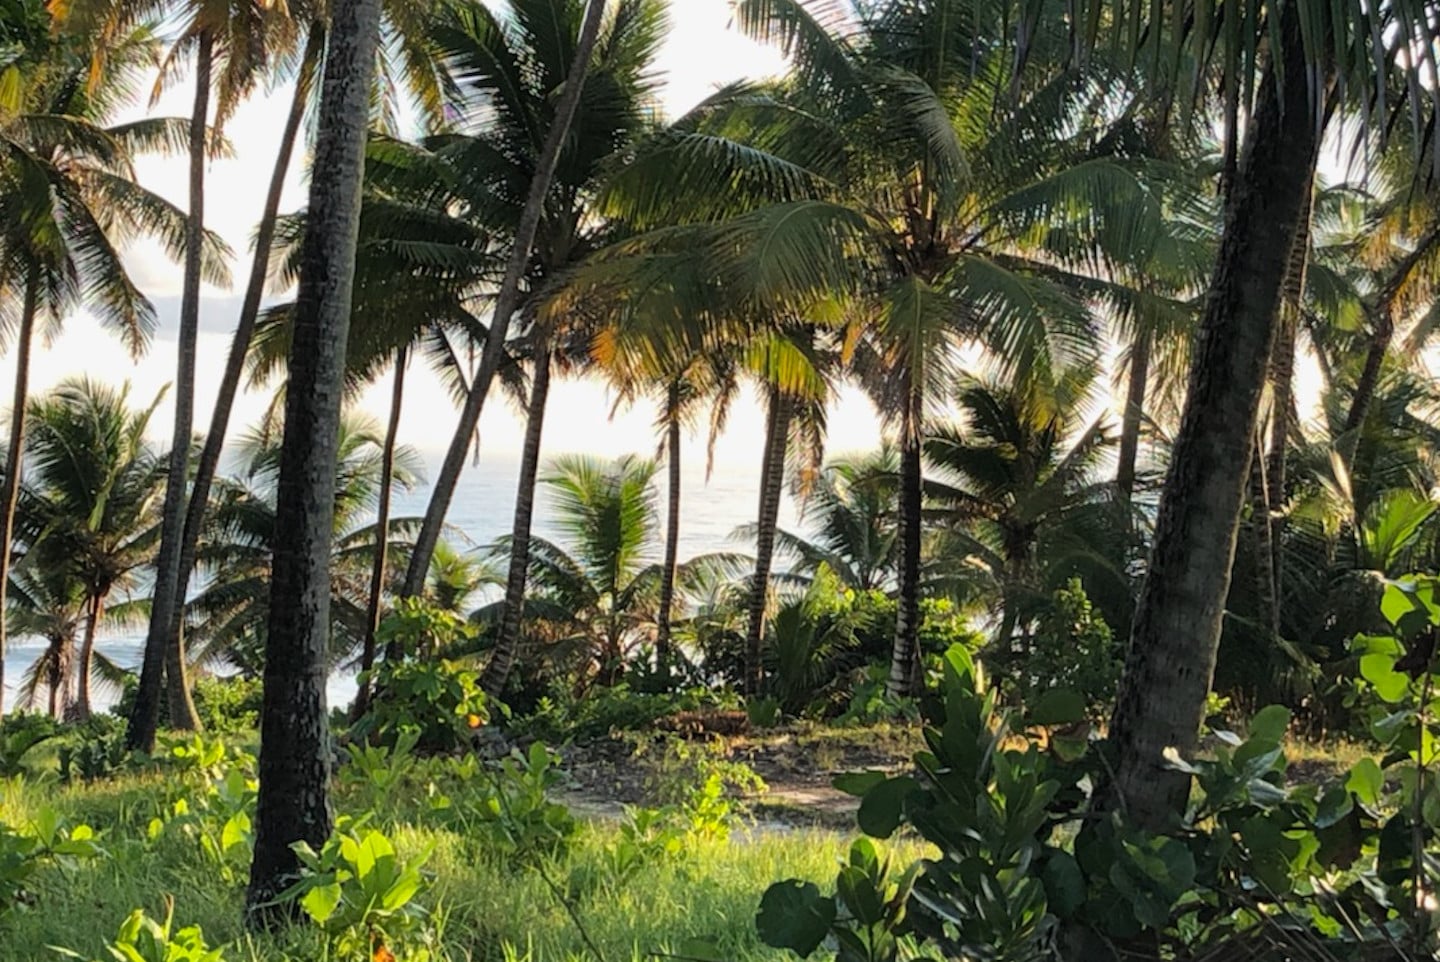 Una vez un muy conocido restaurante, este bosque de palmas mira al mar Atlantico.